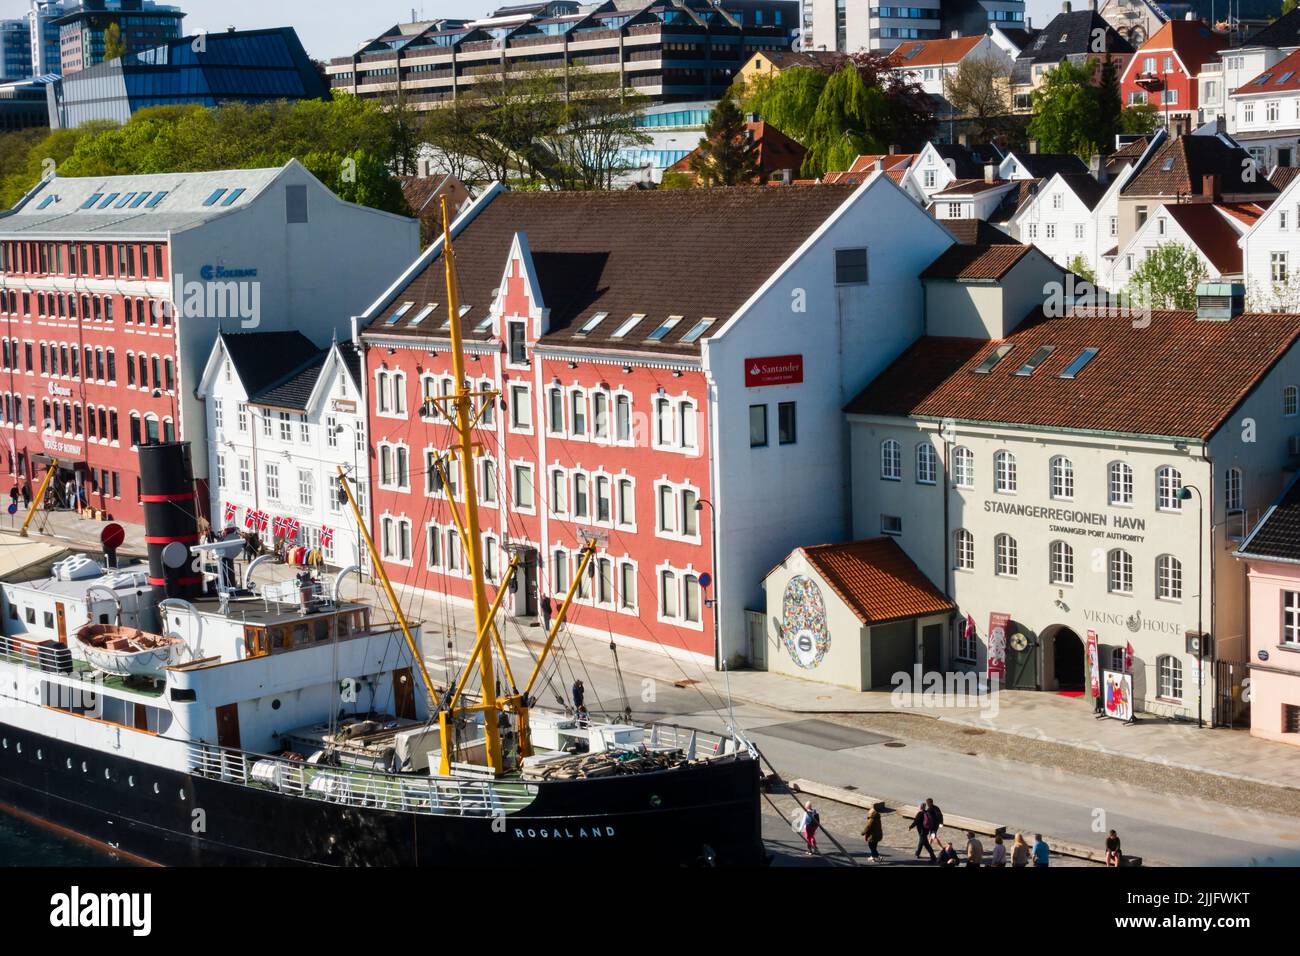 El histórico buque de carga de pasajeros de vapor, MS Rogaland, atracado junto al edificio de la Autoridad Portuaria de Stavangerregionen Havn, en Stavanger, Noruega Foto de stock